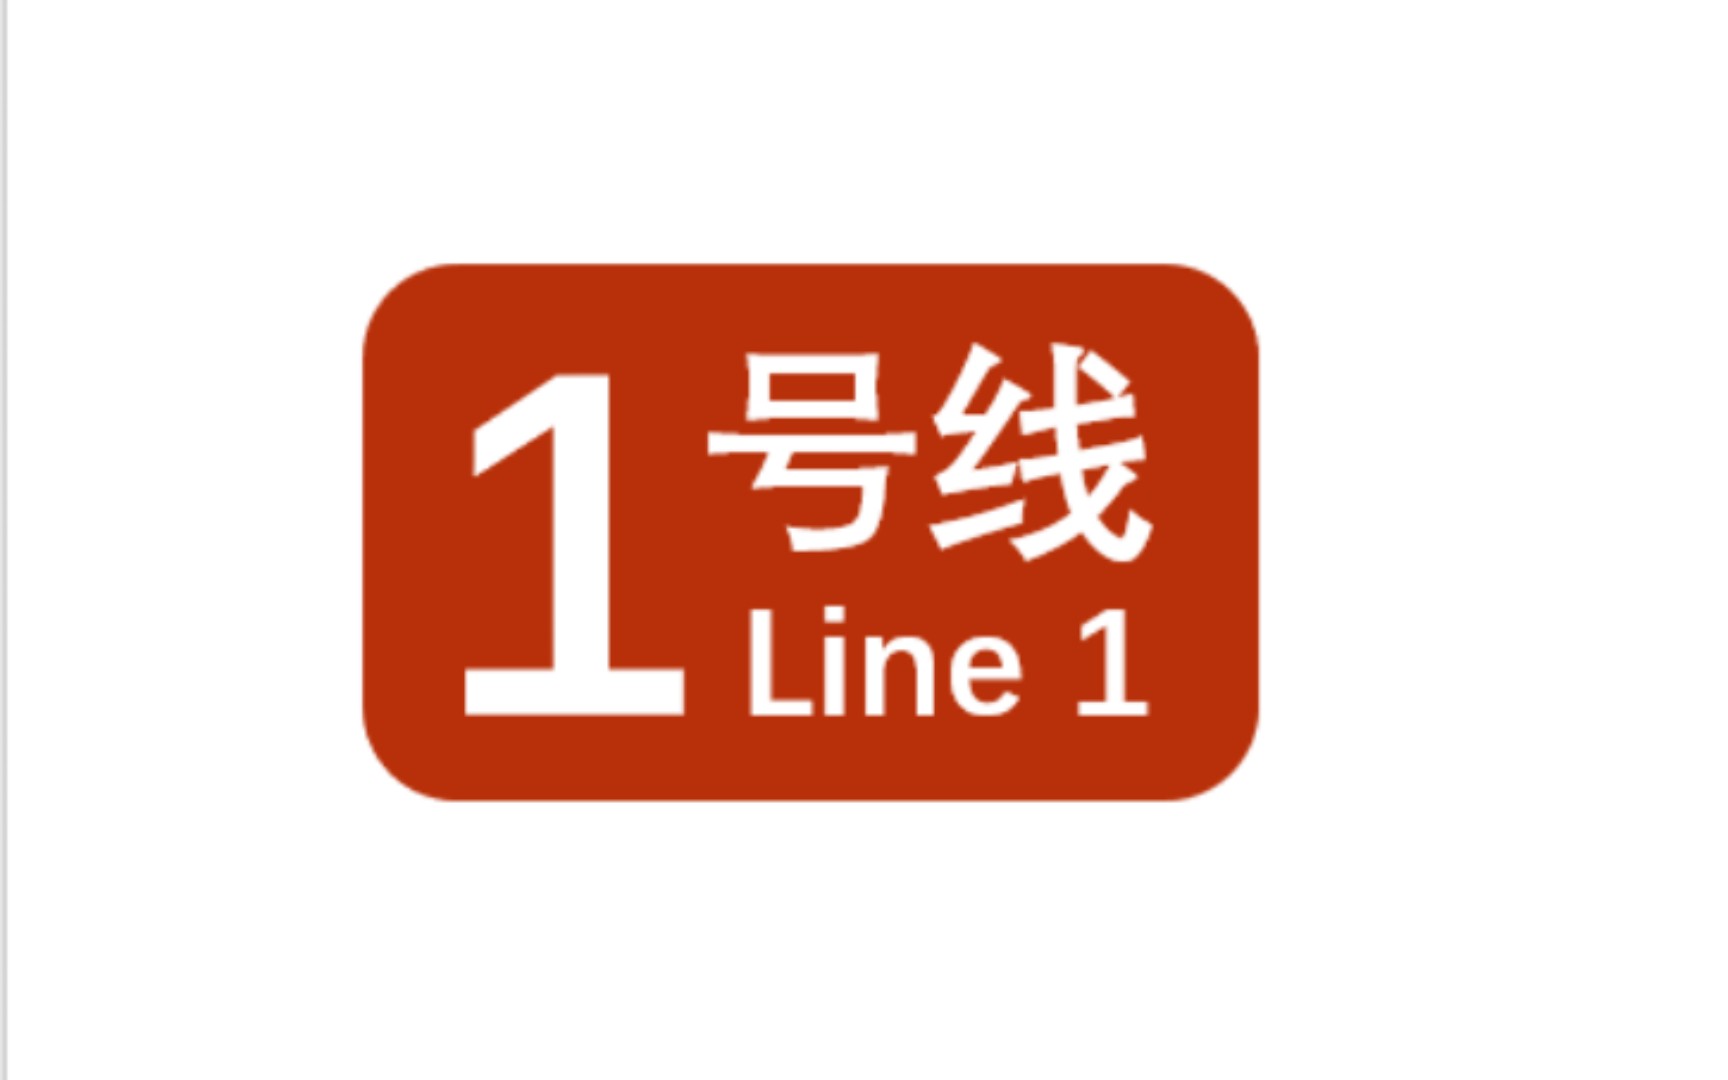 【白噪音】北京地铁1号线 古城-四惠东 全程白噪